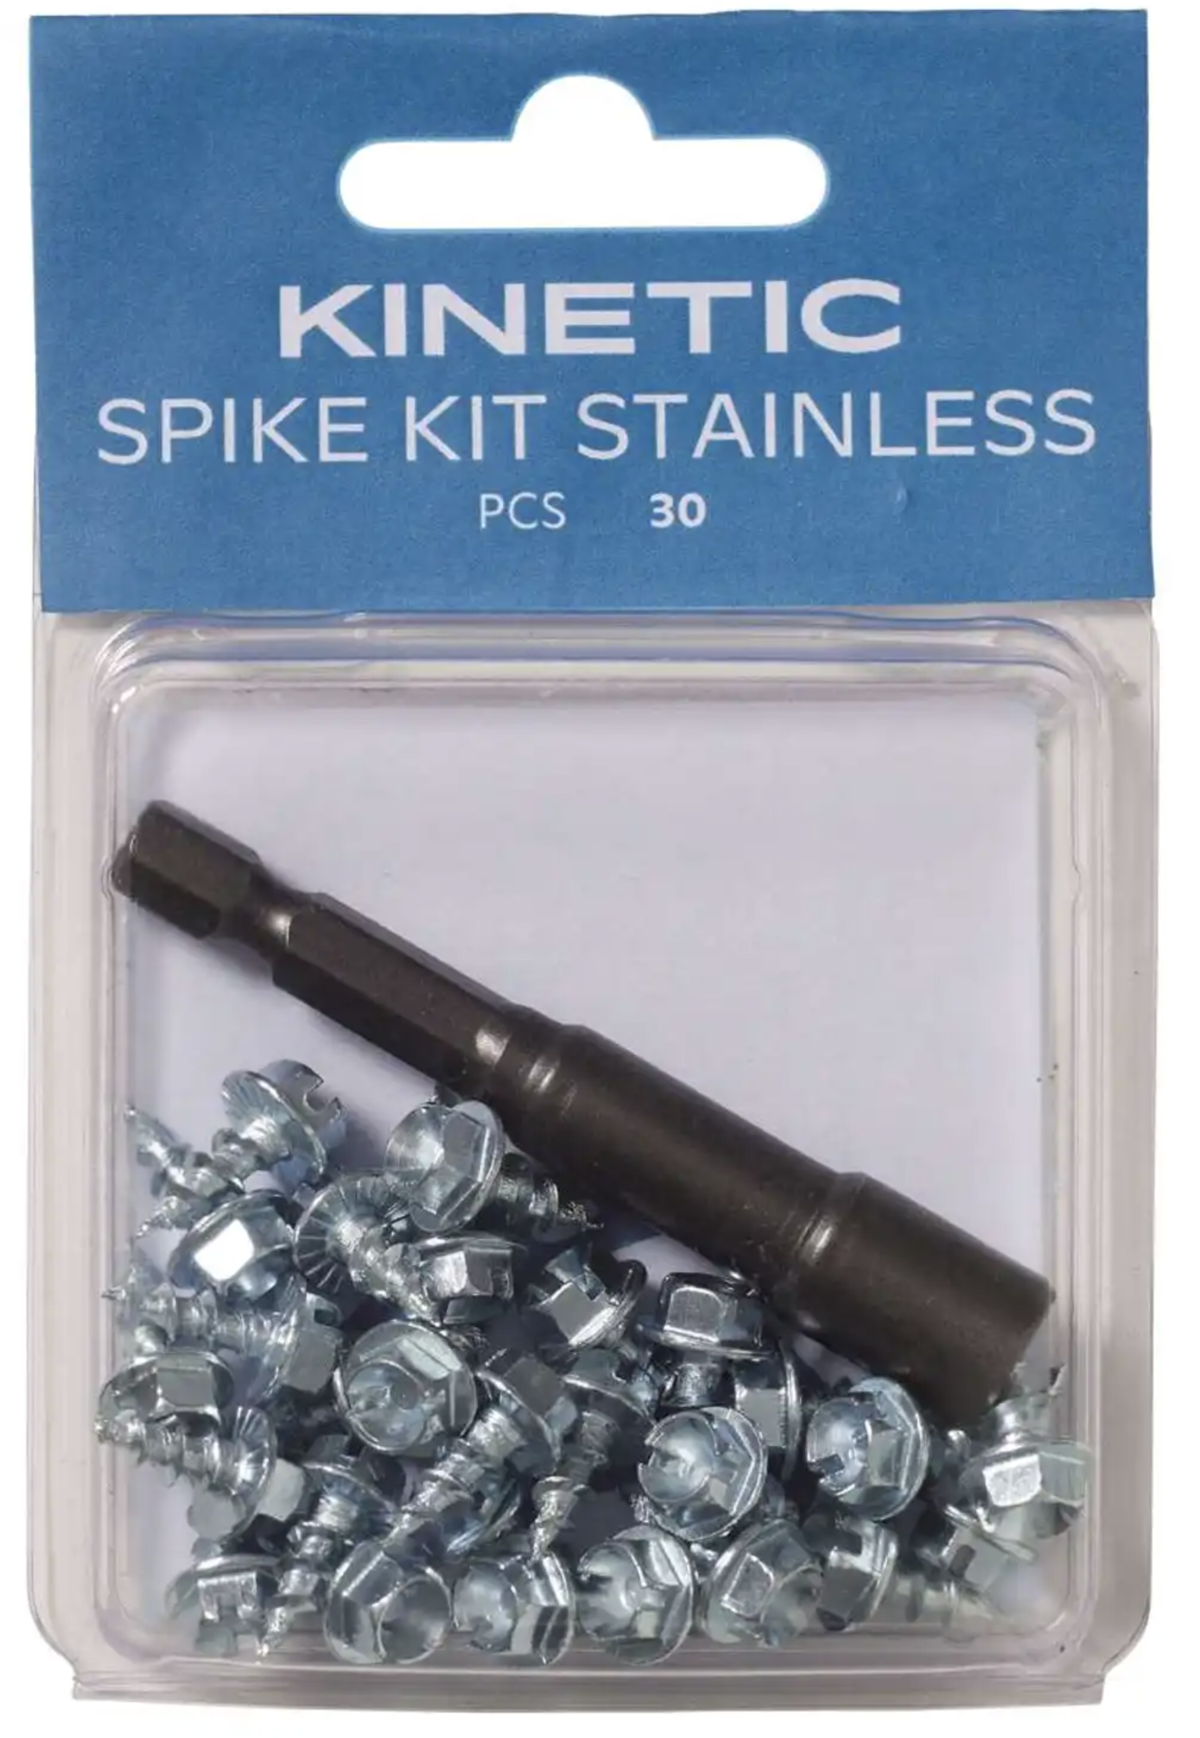 Kinetic Bodáky Spike Kit Stainless 30ks